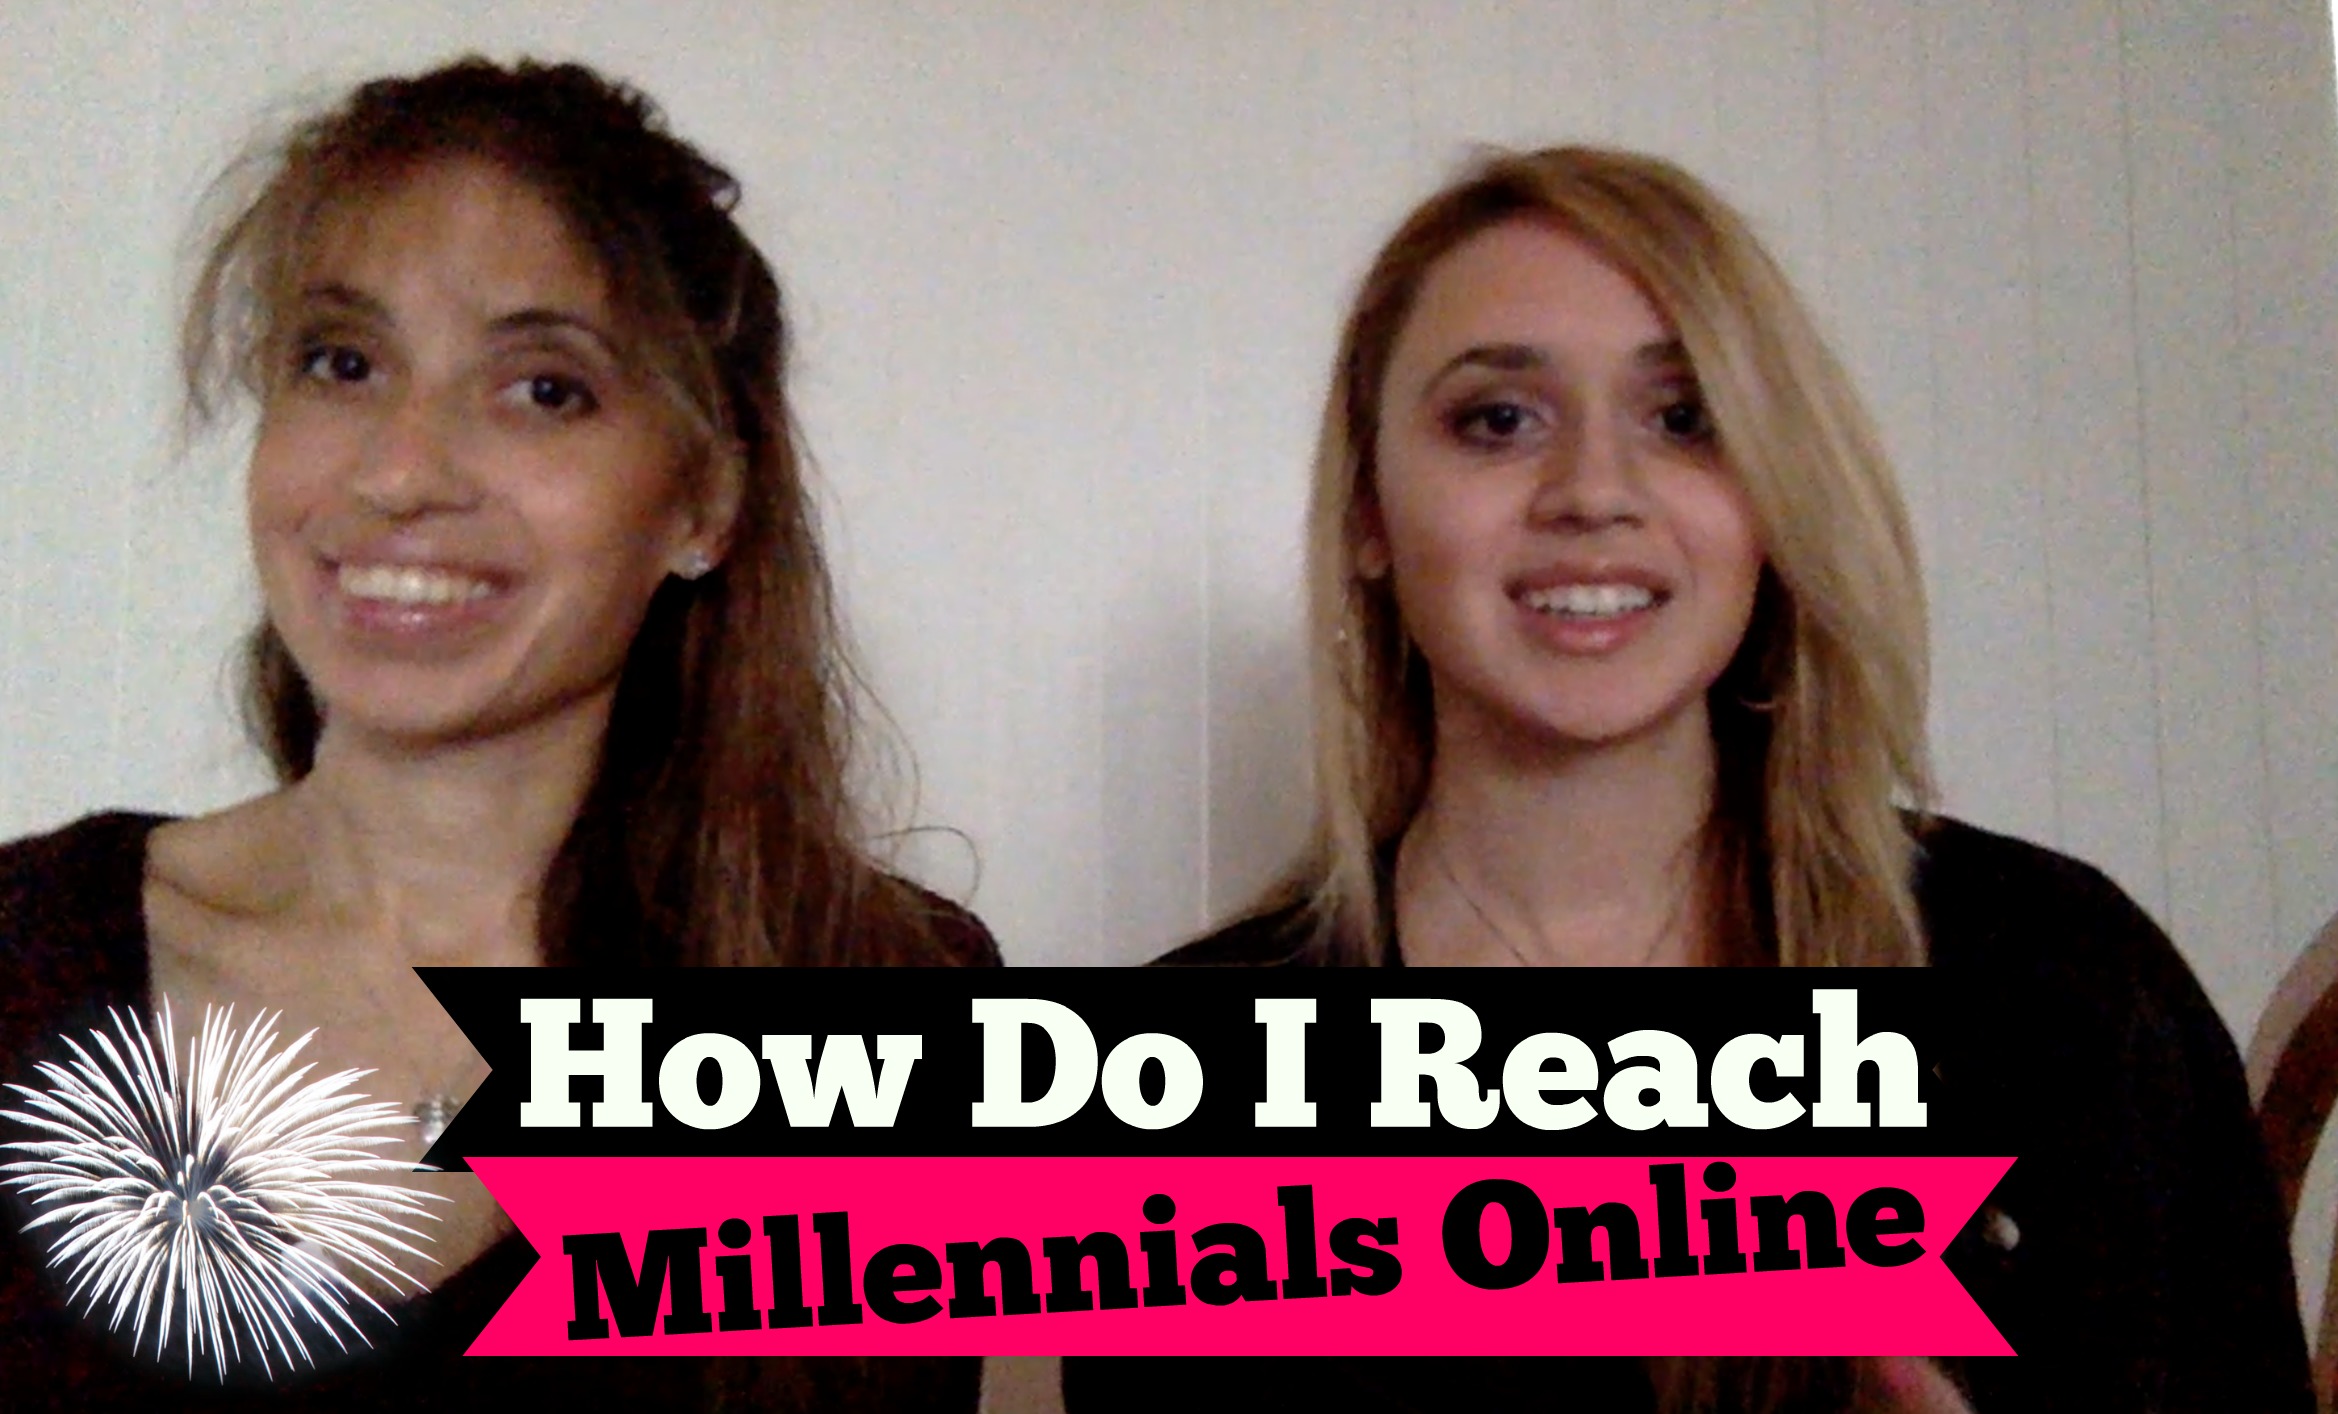 How Can My Business Reach Millennials Online?